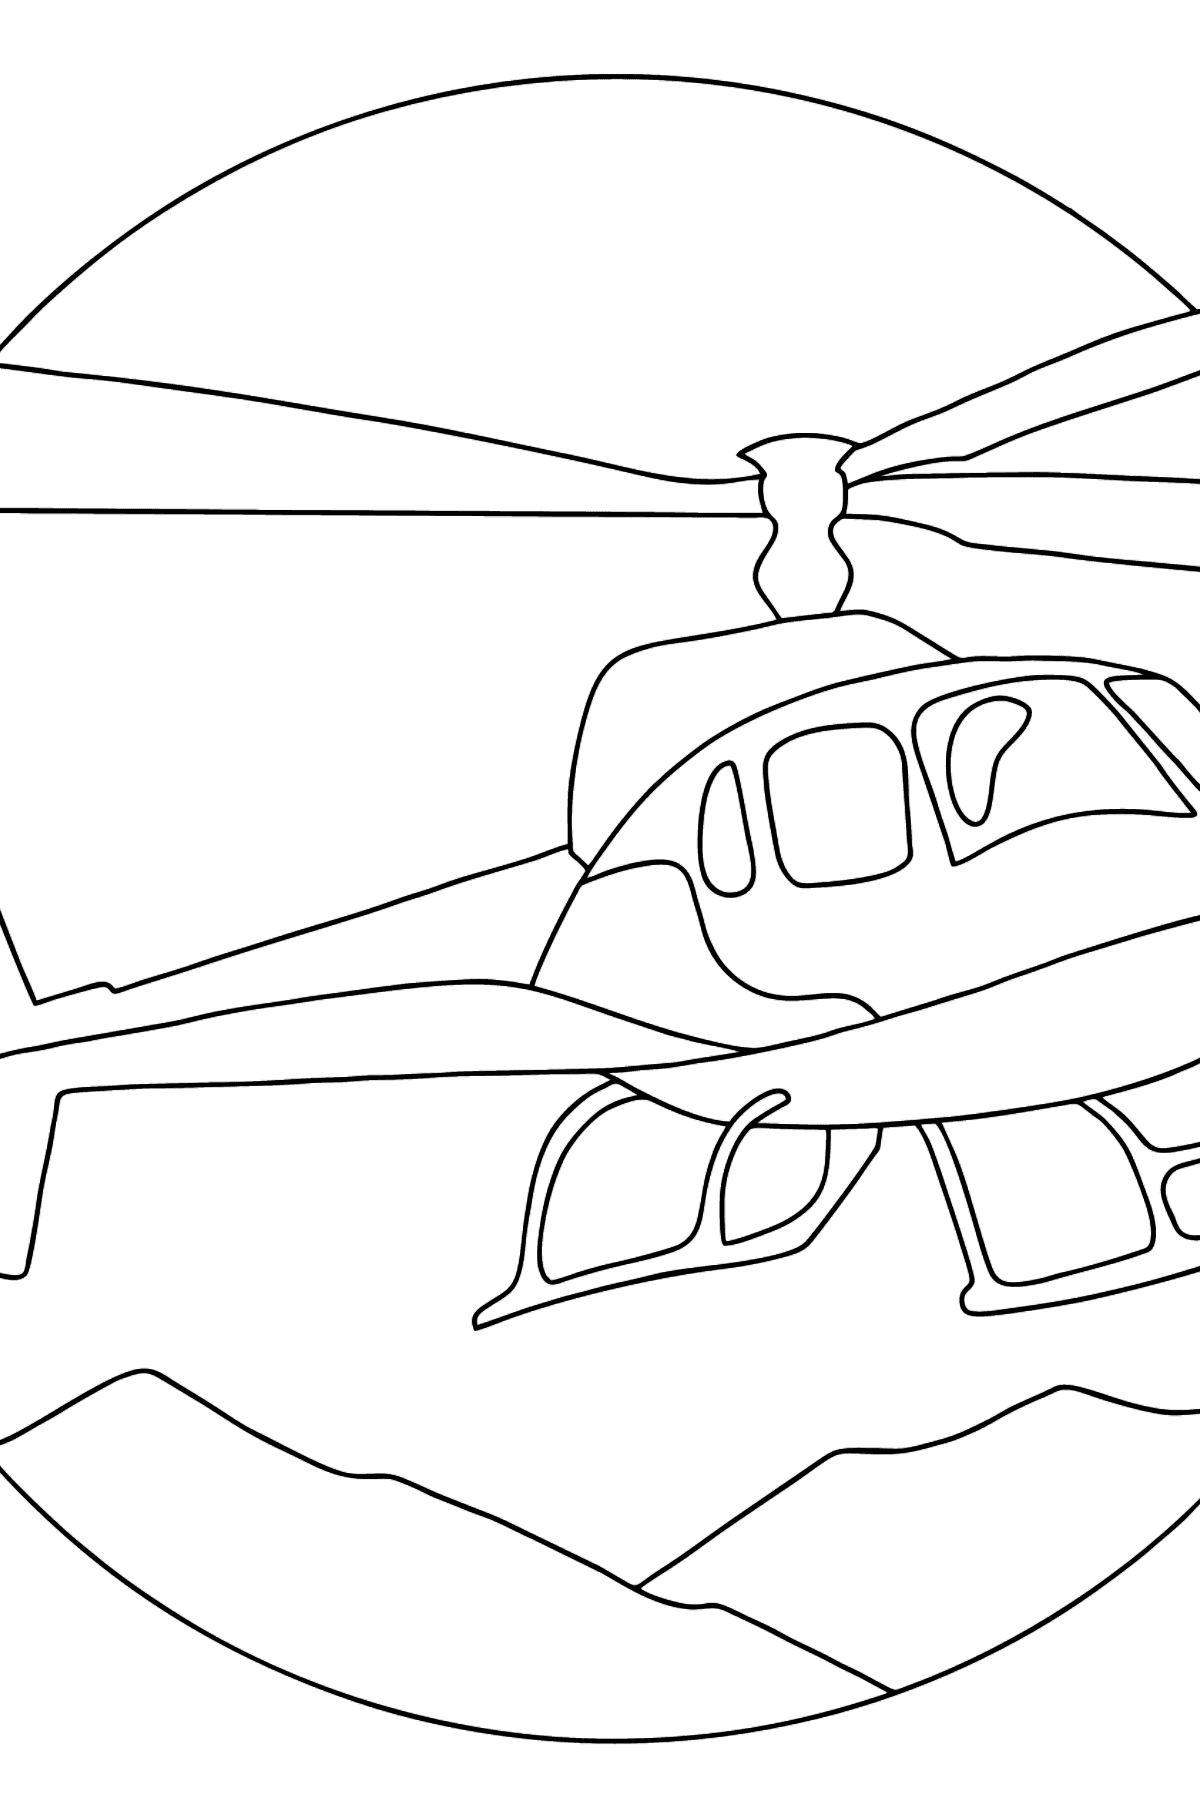 Coloriage avec Un hélicoptère de ville - En Ligne Coloriage à imprimer gratuit - Coloriages pour les Enfants